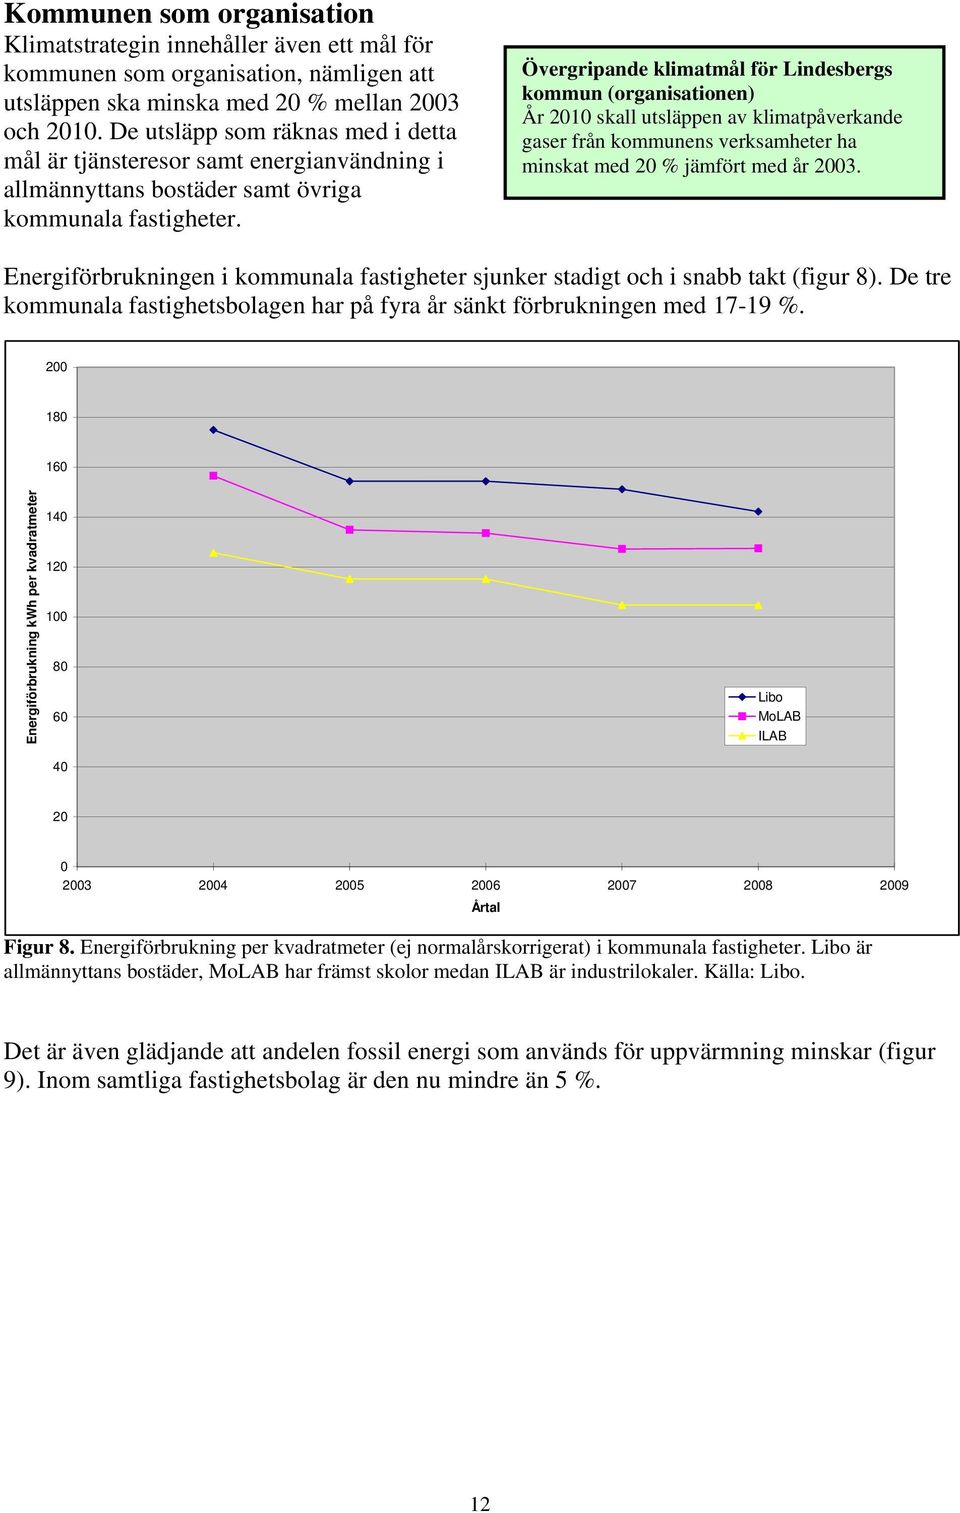 Övergripande klimatmål för Lindesbergs kommun (organisationen) År 2010 skall utsläppen av klimatpåverkande gaser från kommunens verksamheter ha minskat med 20 % jämfört med år 2003.